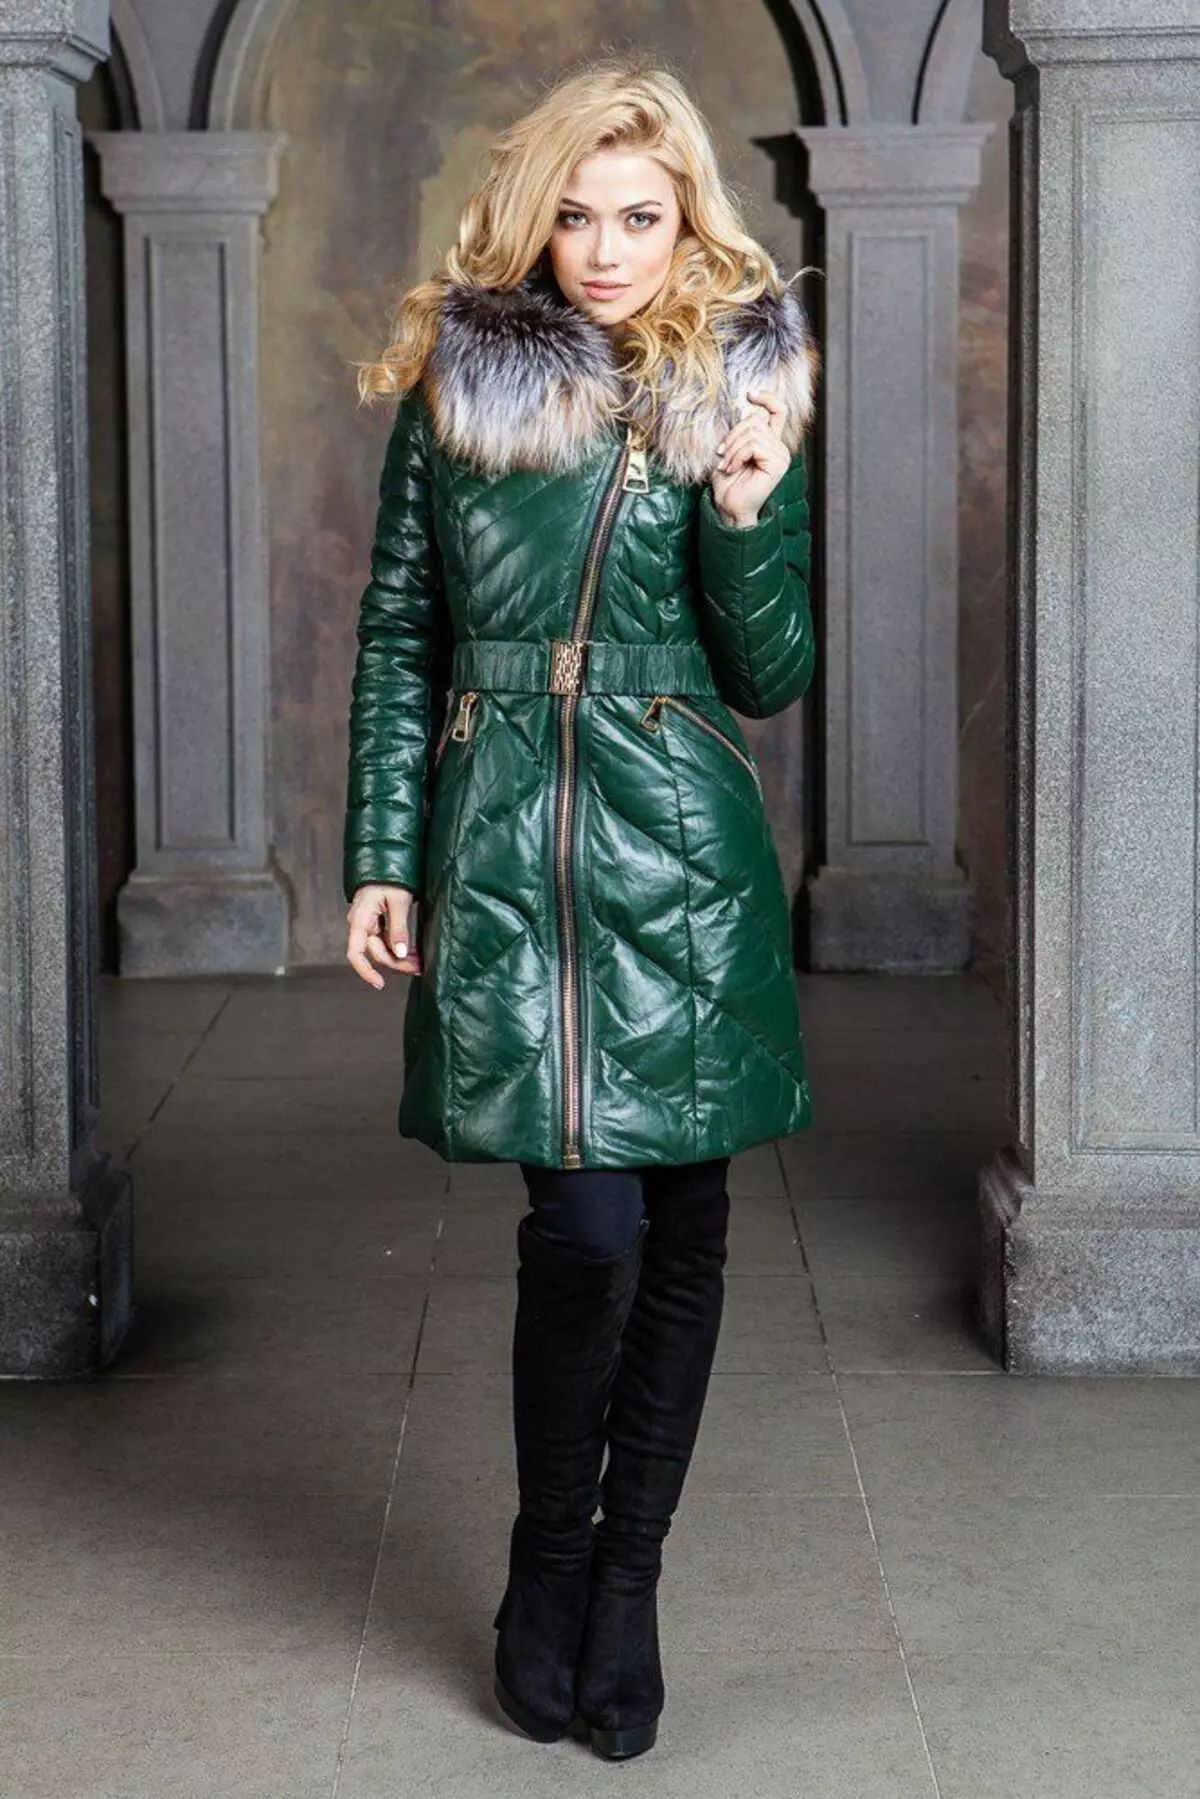 Leather Down Jacket (46 Bilder): Kvinnelige skinnjakker med svart pels pels, hette 14352_43